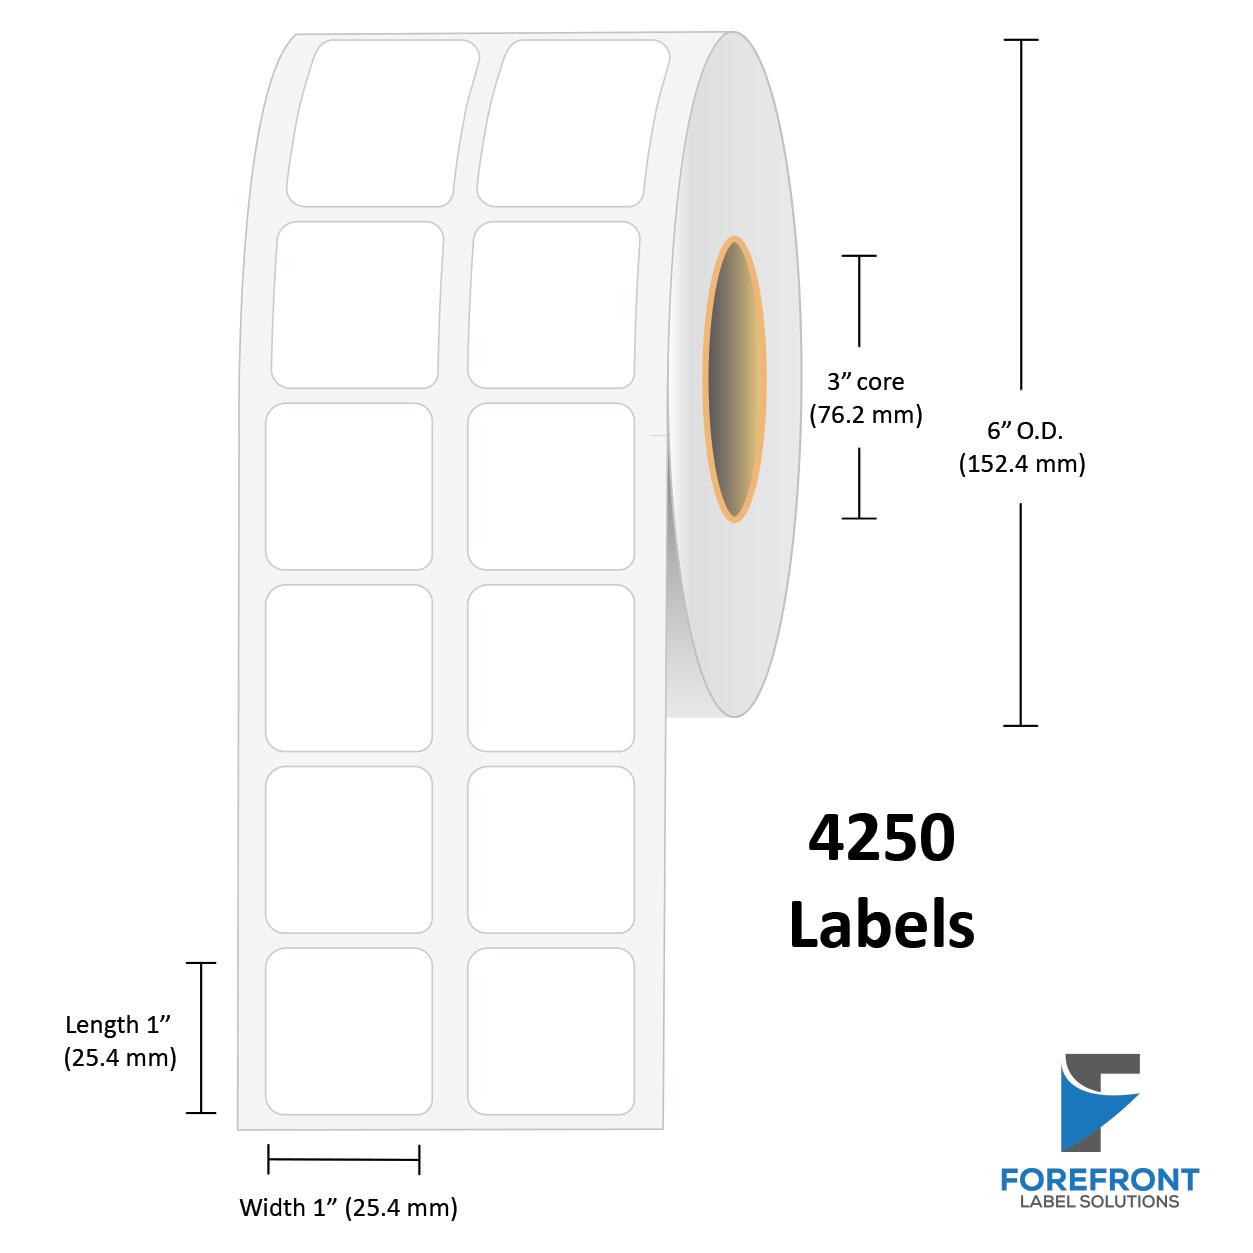 Rouleau d'étiquettes papier mat - TM-C7500/C7500G - Agis Étiquette